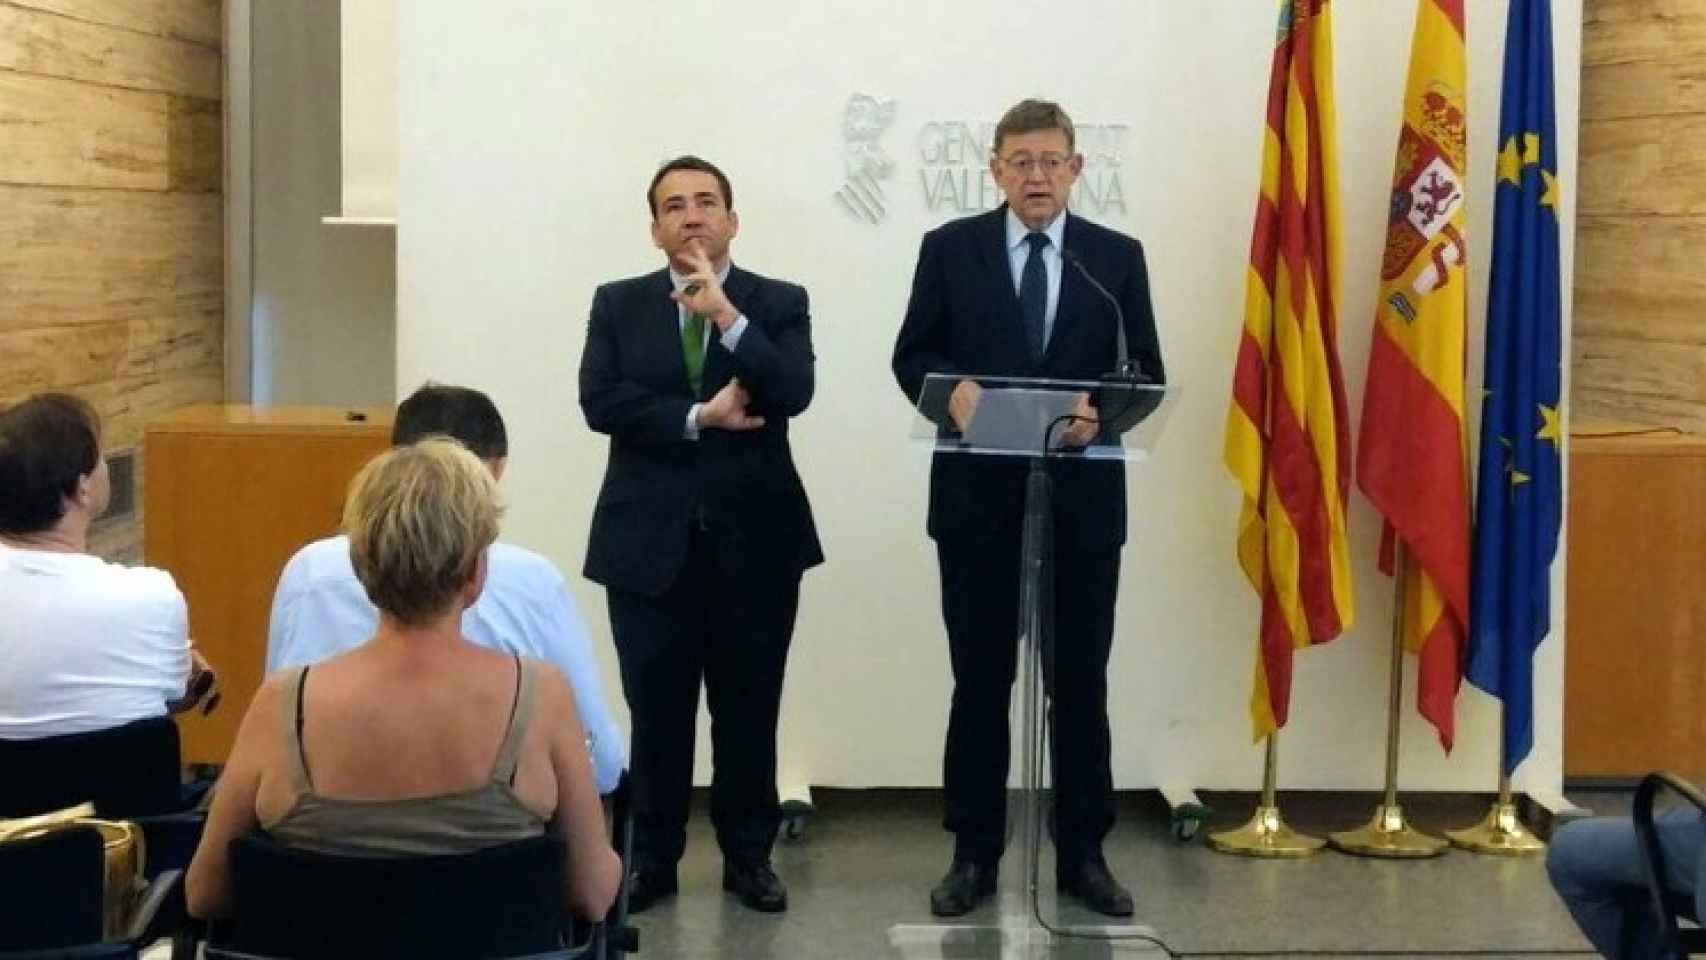 Manuel Illueca, director general del IVF, y Ximo Puig, presidente de la Comunidad Valenciana.